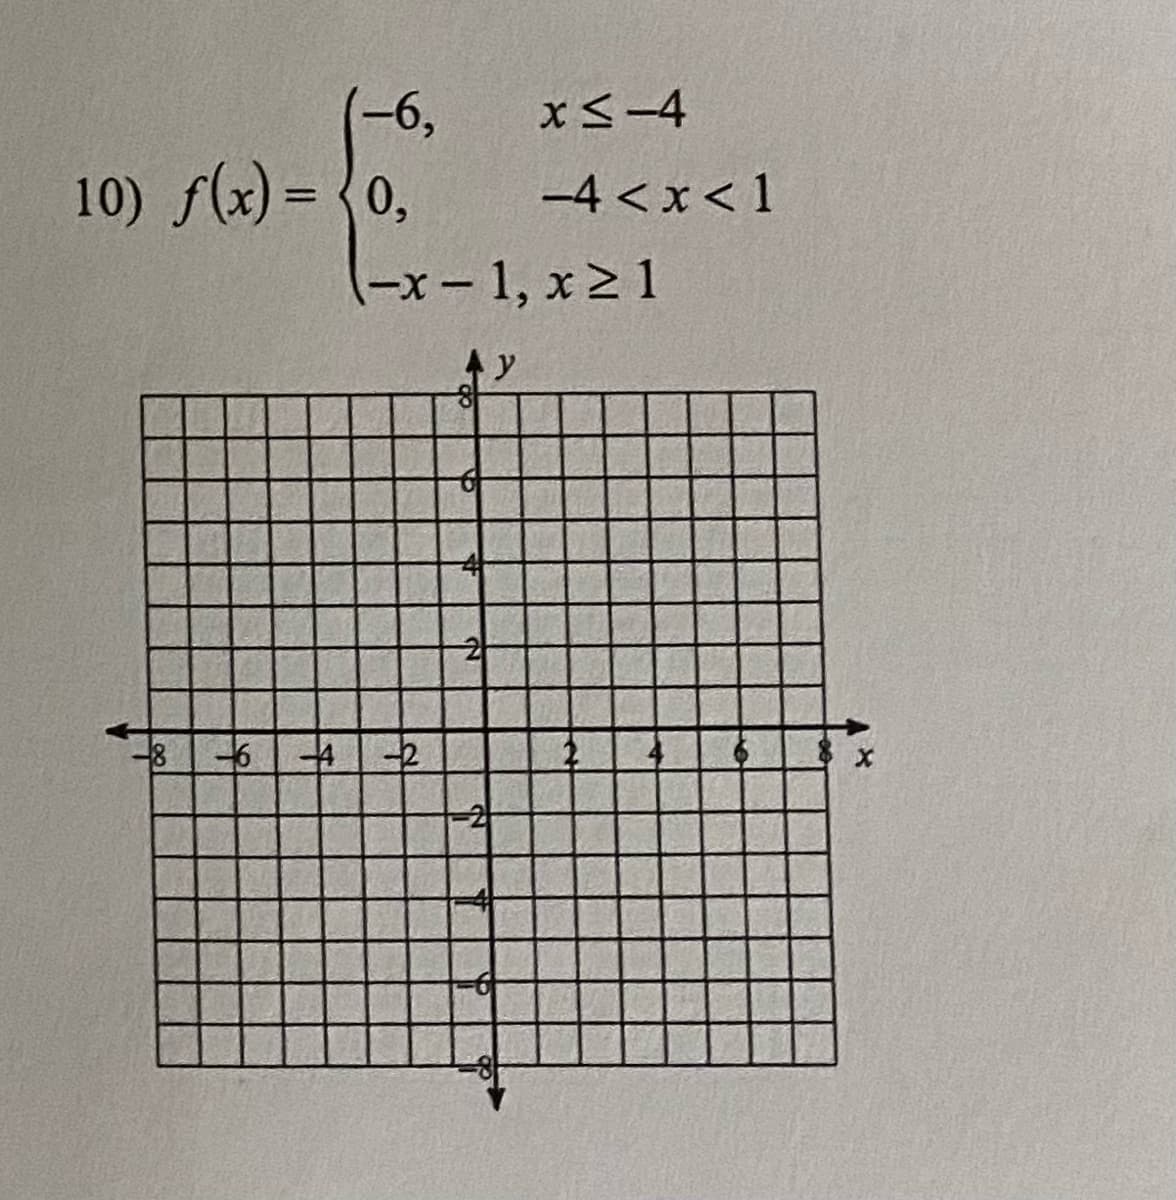 (-6,
x<-4
10) f(x) = {0,
-4 <x< 1
-x-1, x2 1
|
トy
2
